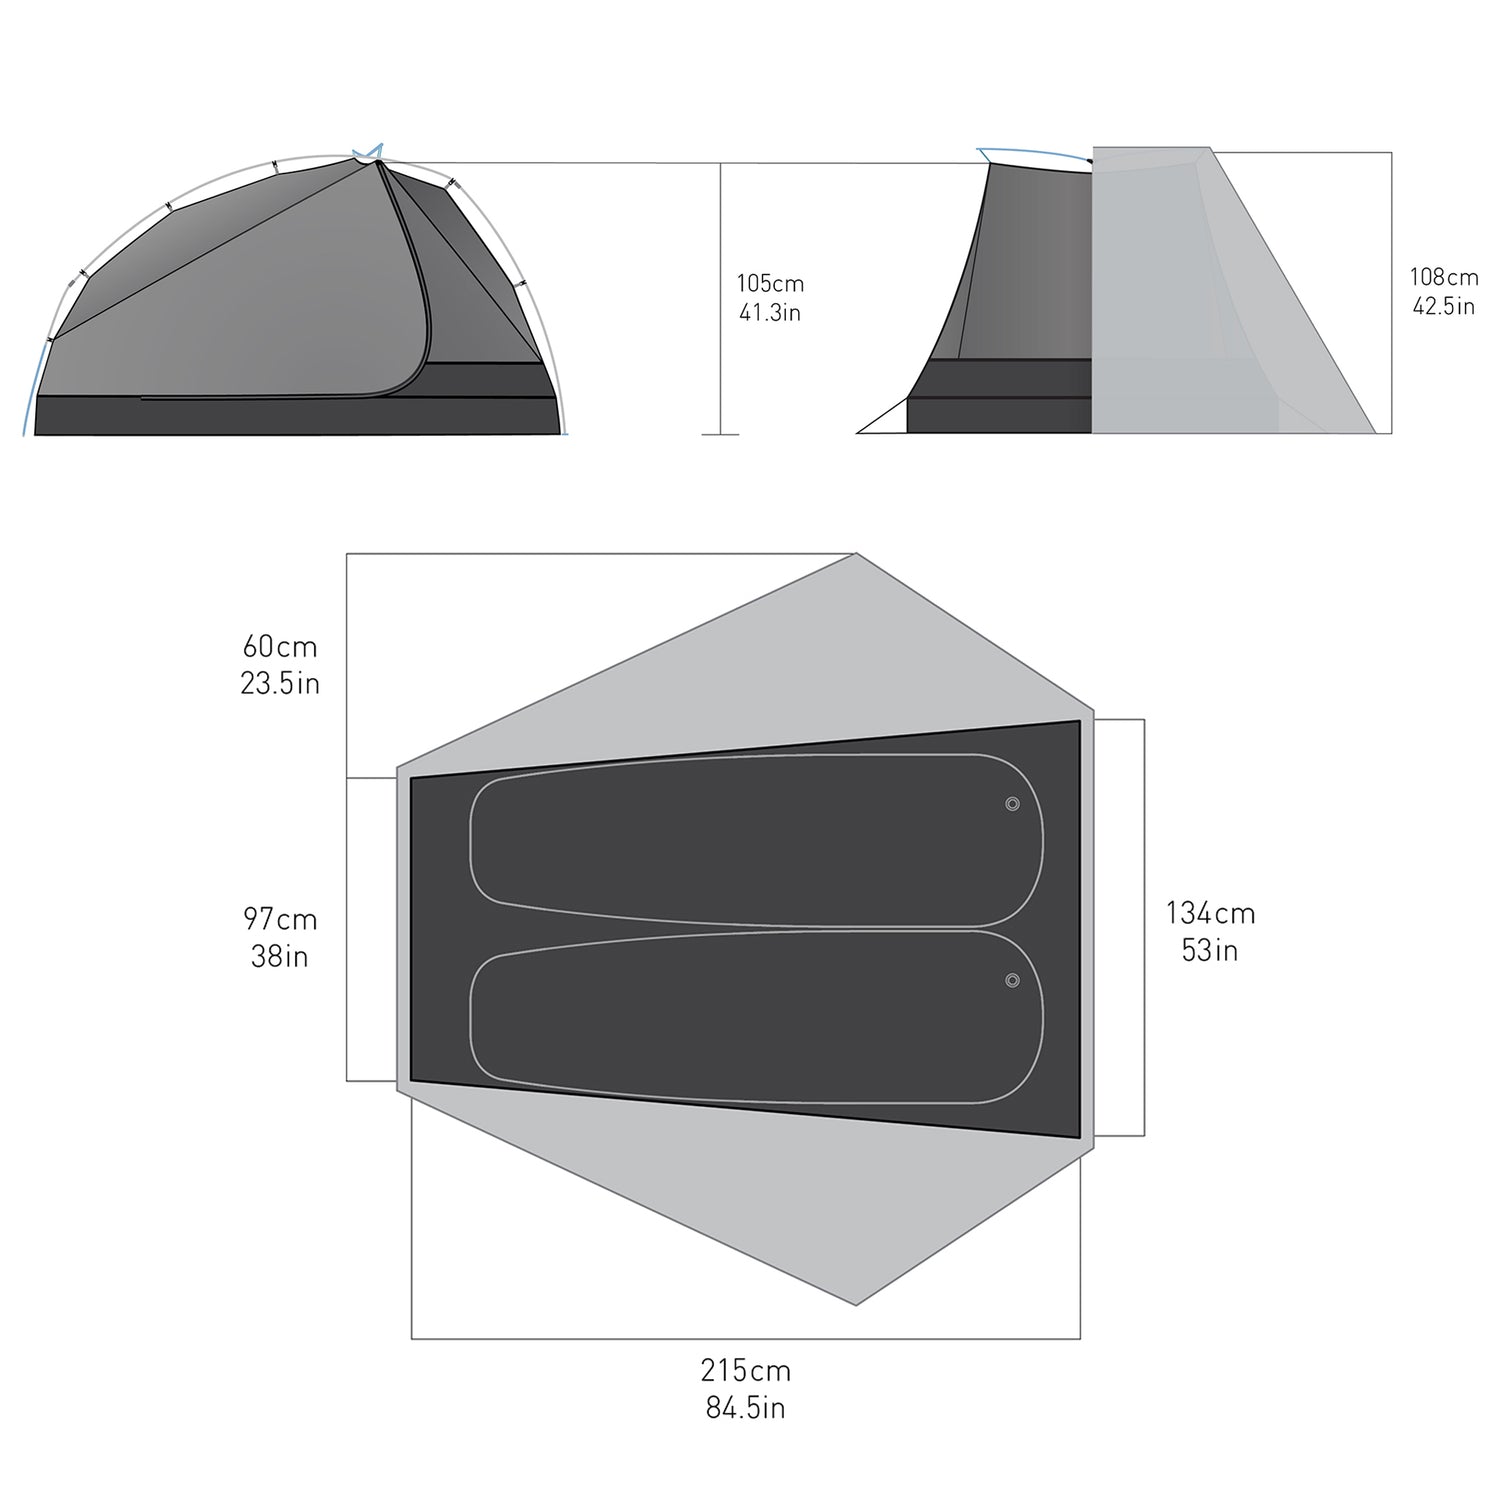 2 Person || Alto Semi-Free Standing Ultralight Tent